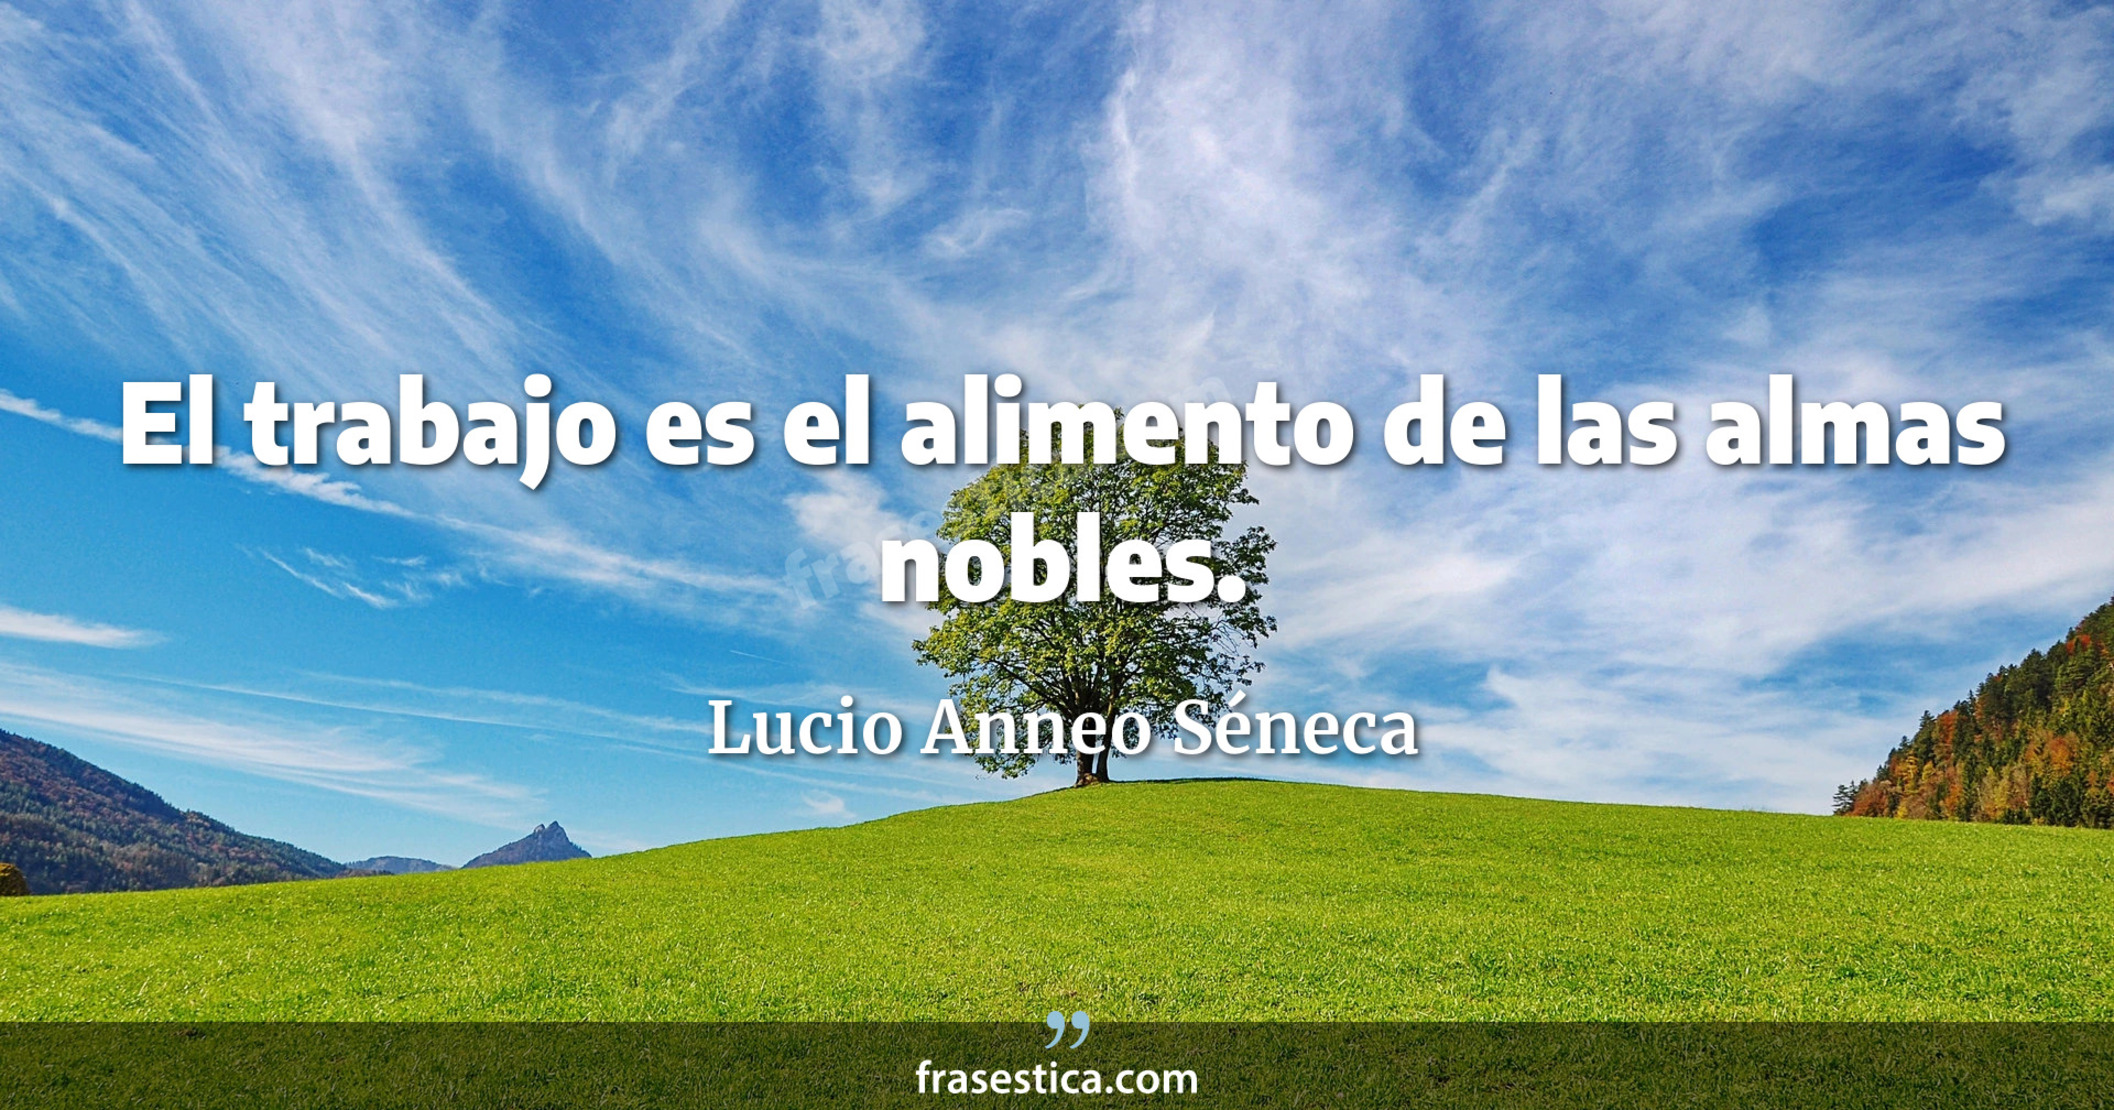 El trabajo es el alimento de las almas nobles. - Lucio Anneo Séneca